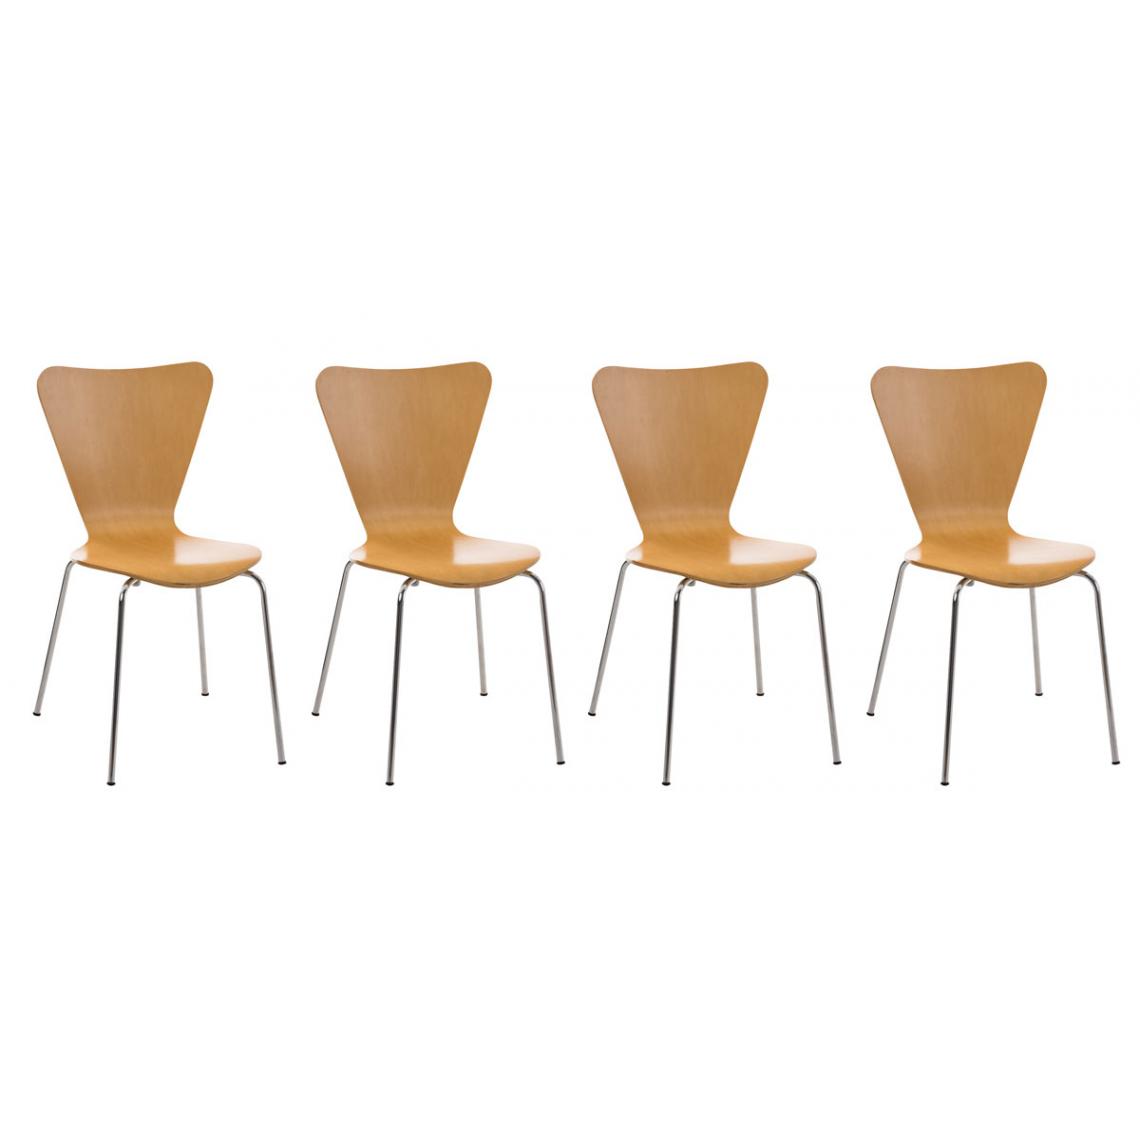 Icaverne - Splendide Lot de 4 chaises visiteurs reference Nairobi couleur natura - Chaises